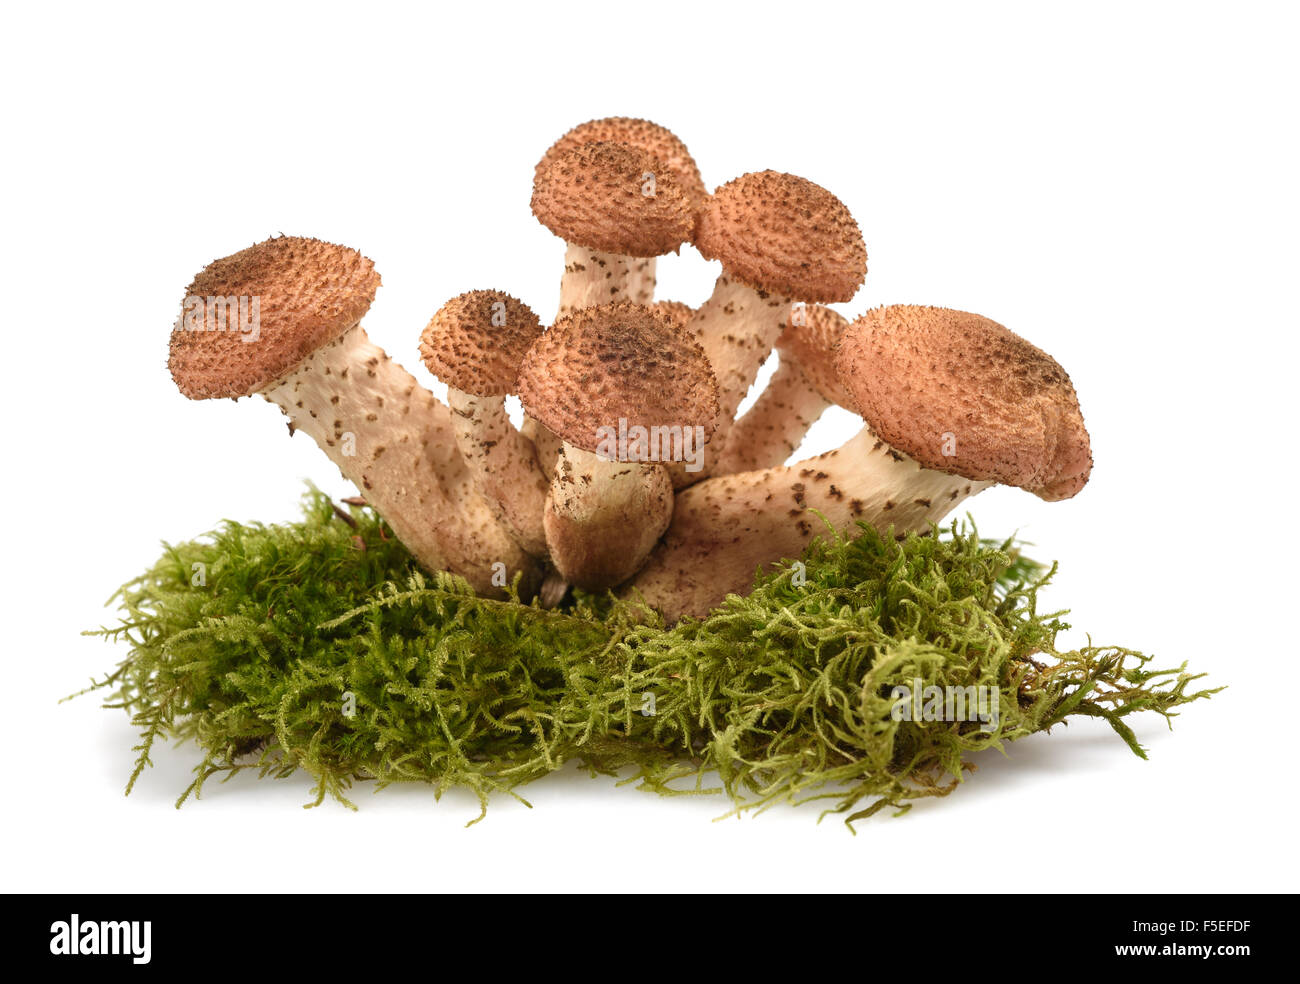 honey fungus mushrooms isolated on white background Stock Photo